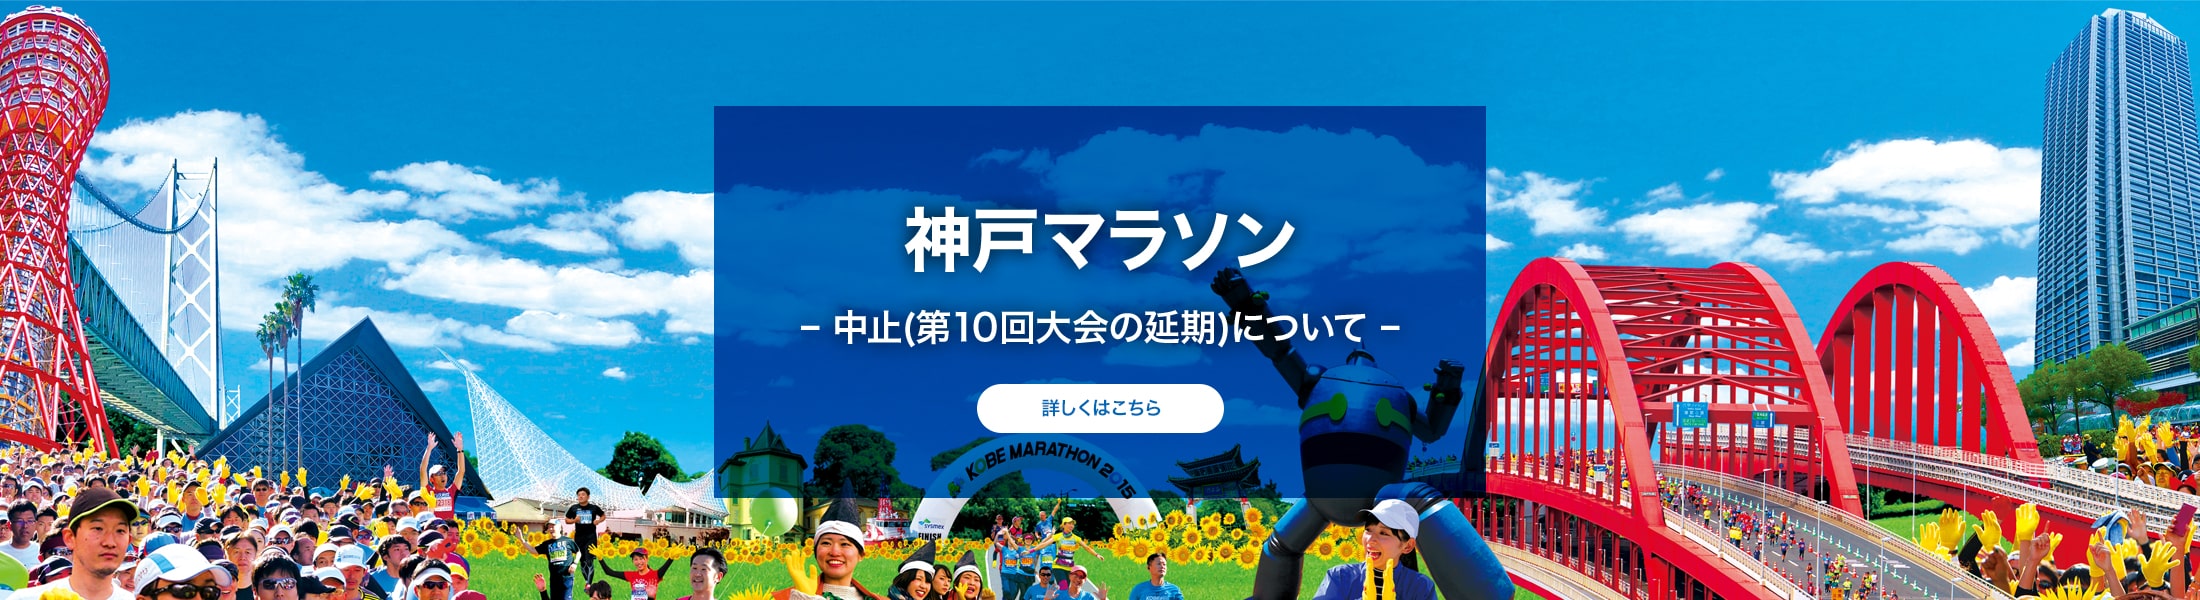 神戸マラソン – 中止(第10回大会の延期)について –